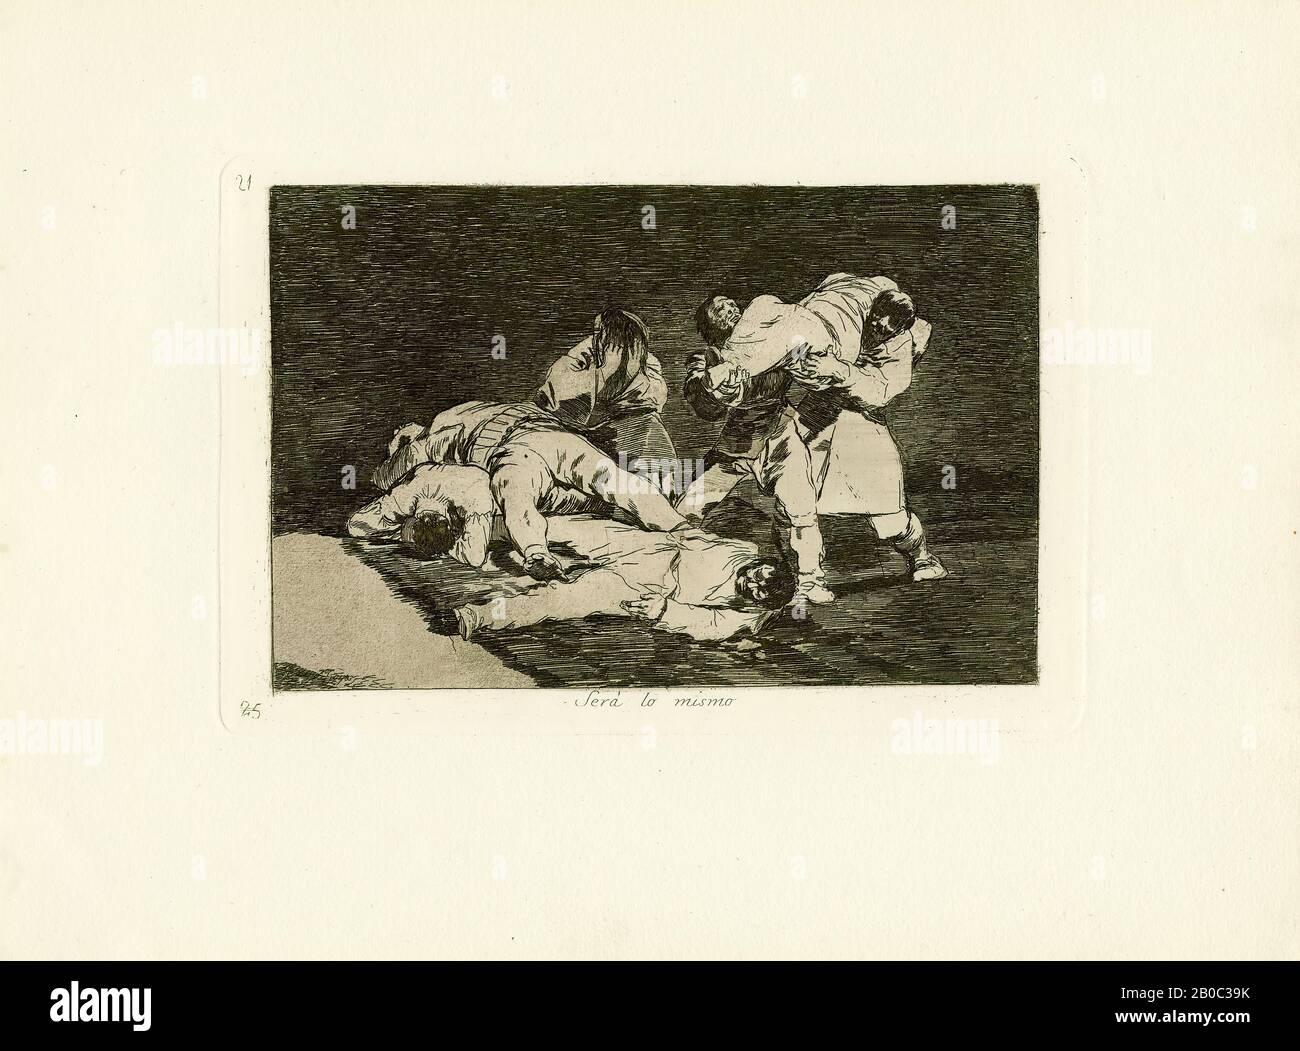 Francisco José, y Lucientes de Goya, Será lo mismo (Es wird das gleiche sein.), ca. 1815, Ätzung mit Aquatint auf Papier, 9 3/4 Zoll x 13 9/16 Zoll Será lo mismo (24,77 x 34,45 cm) ist eine Platte aus Goyas späteren Kriegskatastrophen, die während der Peninsula-Kriege (1808-14) produziert wurde, die Spanien während der napoleonischen Herrschaft Europas plagten. Der Druck enthüllt eine schreckliche Szene, die Goya in diesen Jahren wiederholt erlebt haben mag - Trauernde, die Leichen tragen - obwohl der Mangel an spezifischer Symbolik oder historischem Kontext ein universelleres Thema nahelegt. Goyas einzigartige Fähigkeit, solch zeitloses Mittel zu destillieren Stockfoto